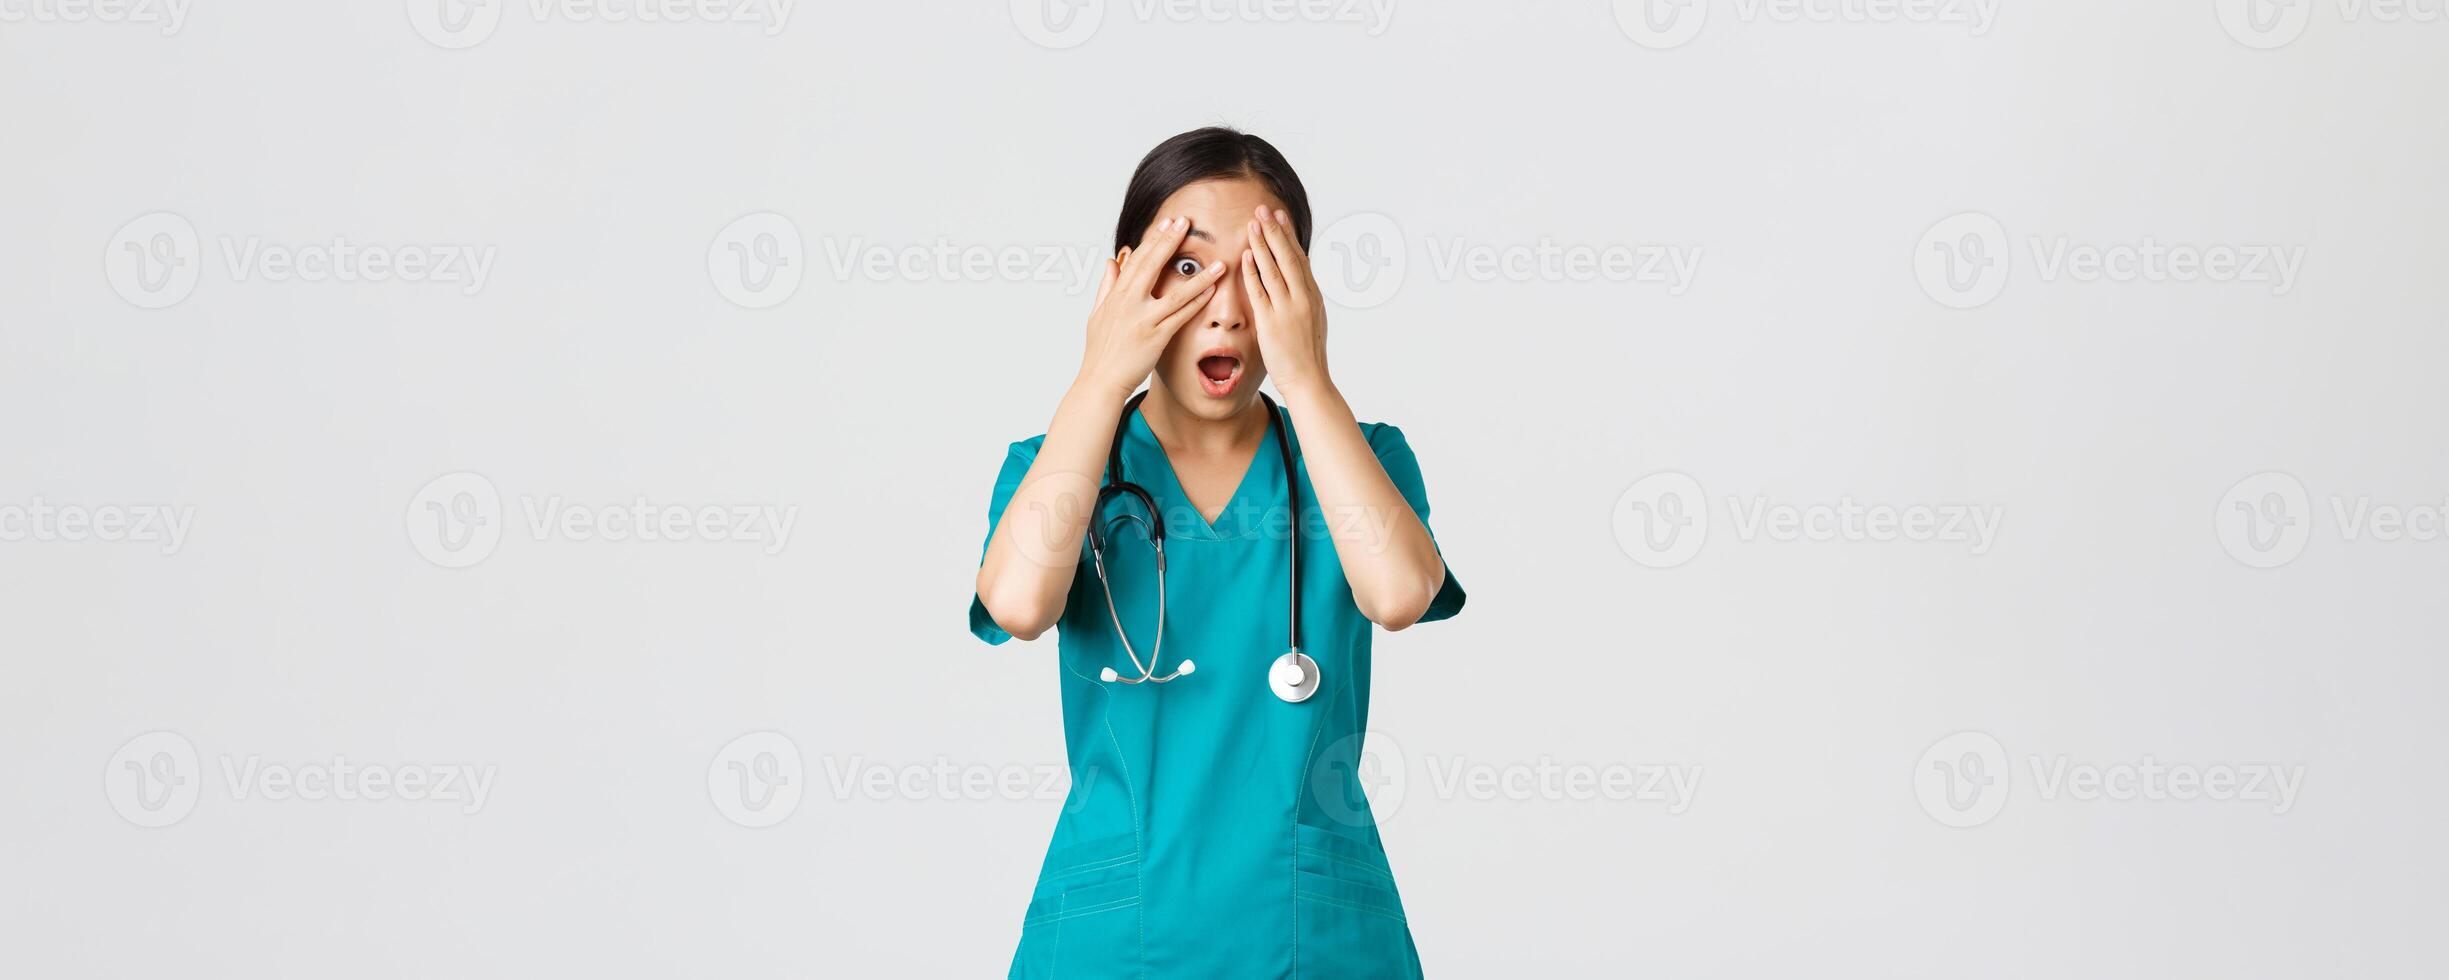 COVID-19, cuidados de saúde trabalhadores e impedindo vírus conceito. assustado e chocado ásia fêmea enfermeira, médico dentro esfrega testemunha alguma coisa embaraçoso ou apavorante, cobrir olhos mas olhadinha através dedos foto